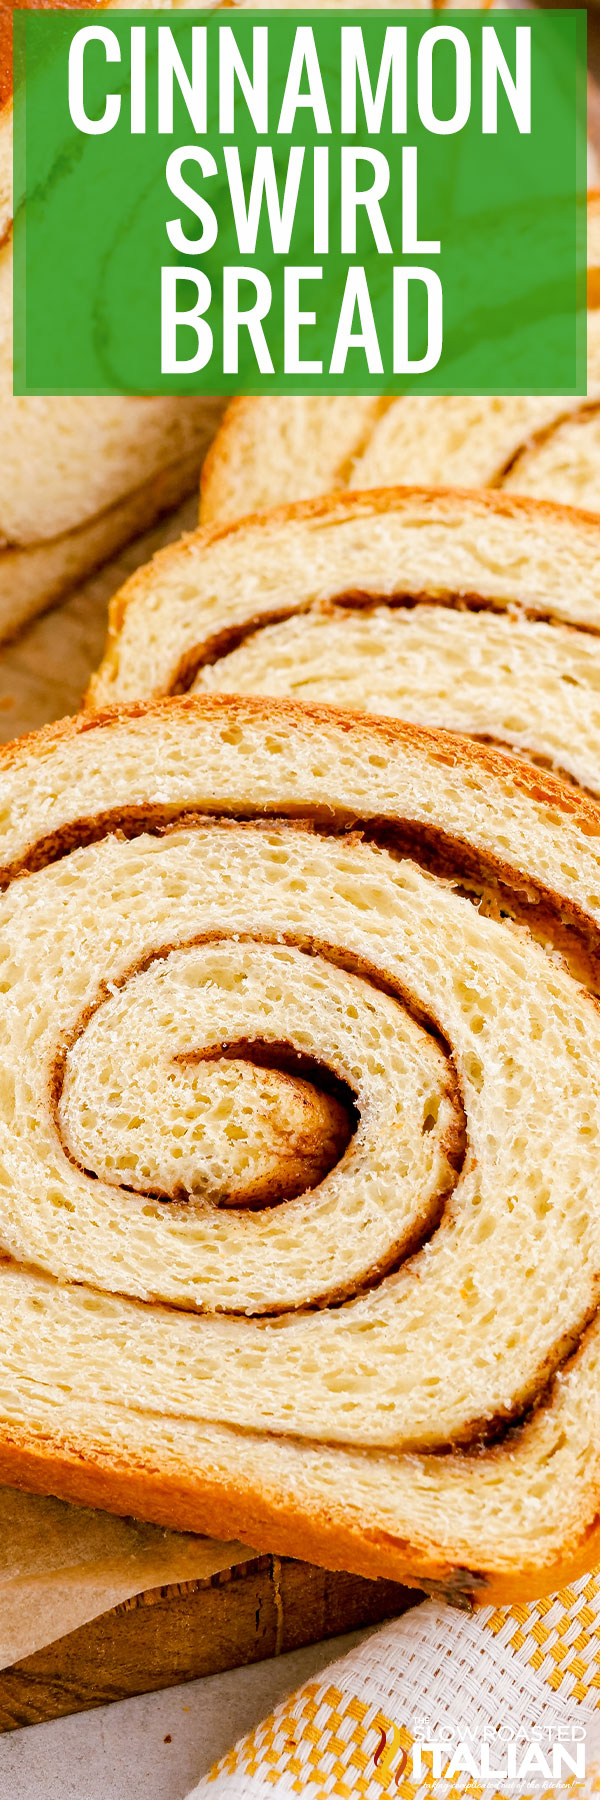 titled collage for cinnamon swirl bread recipe